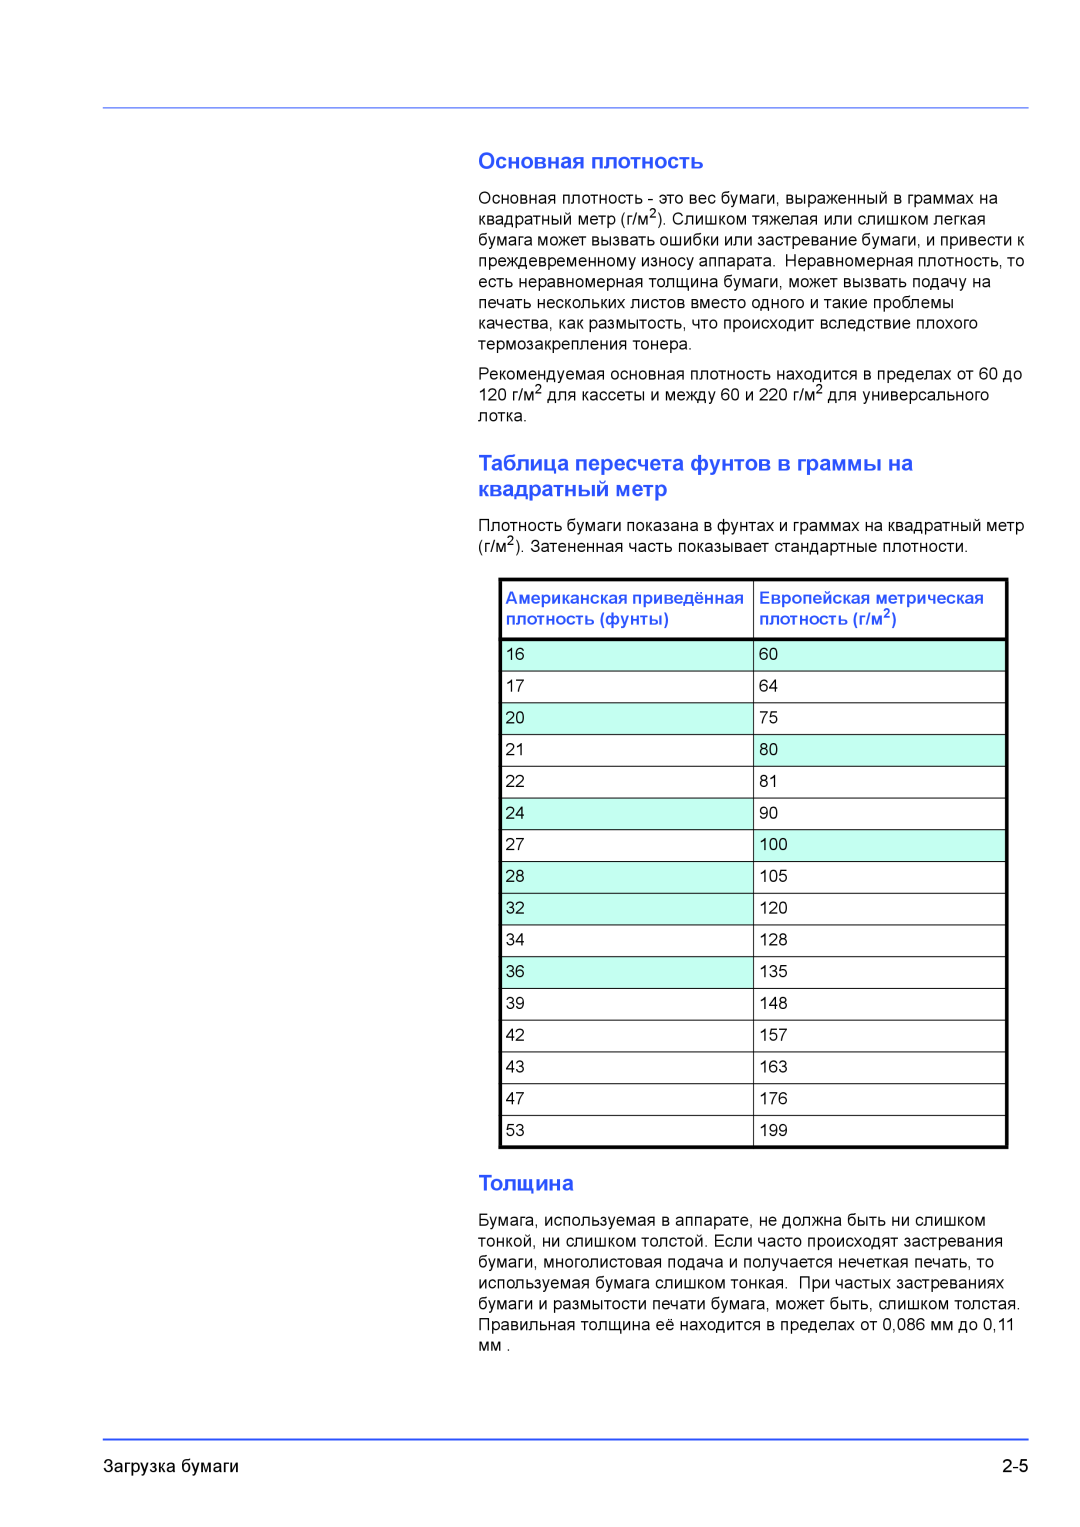 Kyocera FS-1100 Основная плотность, Таблица пересчета фунтов в граммы на квадратный метр, Толщина, Европейская метрическая 